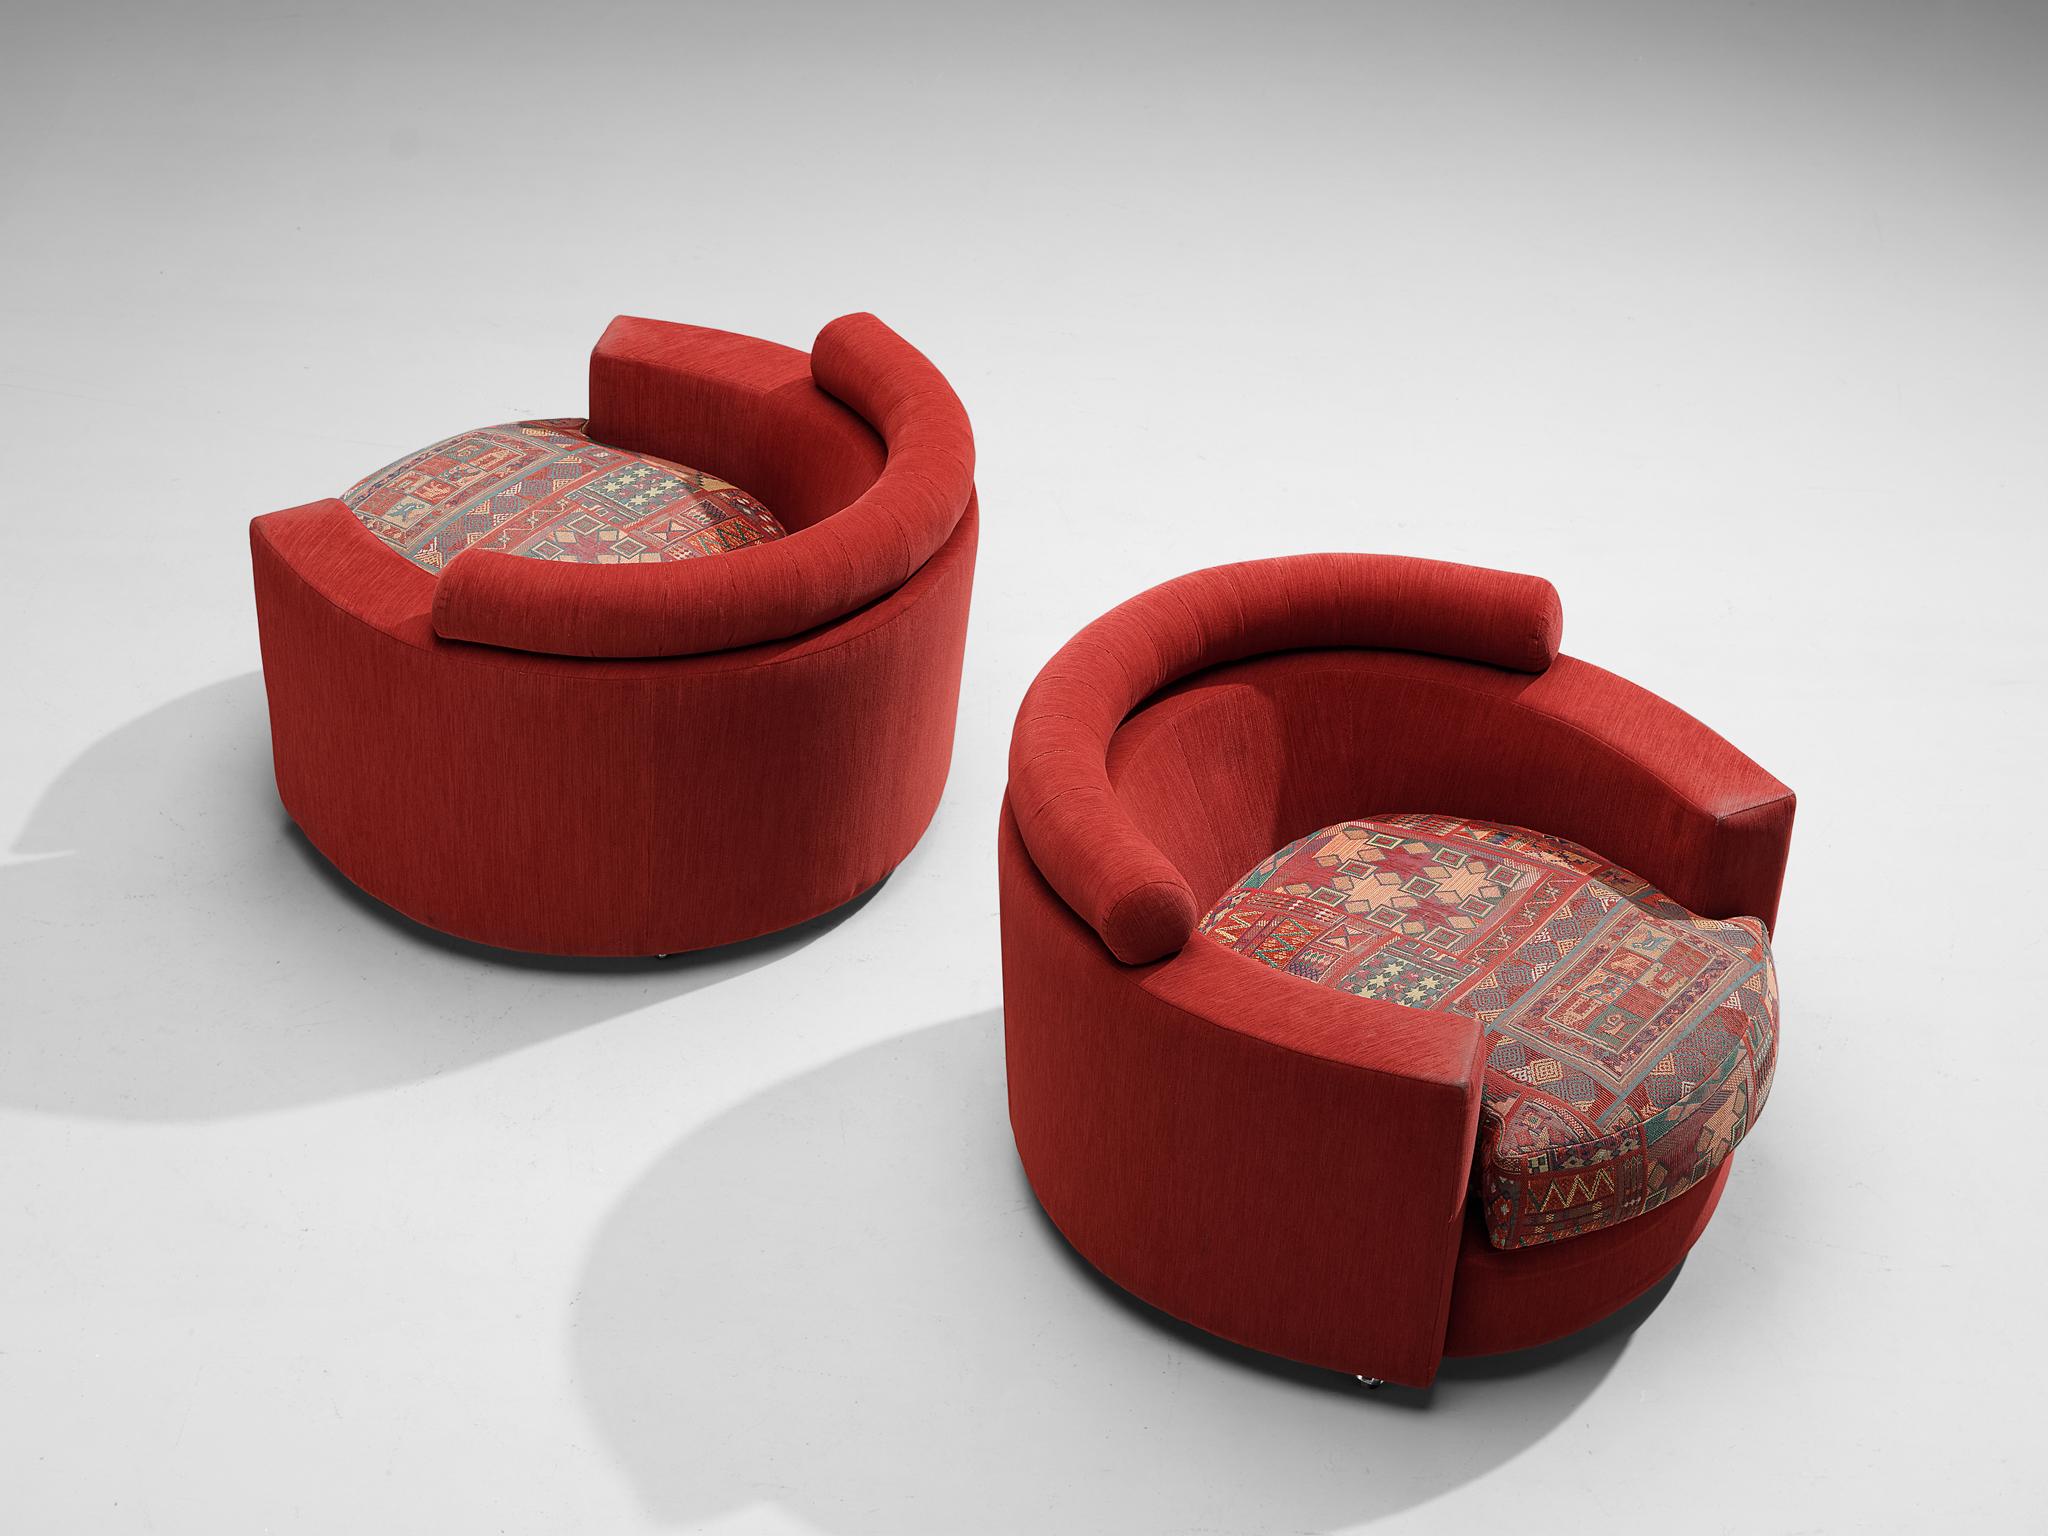 Roche Bobois, paire de fauteuils, tissu, chrome, France, années 1970

Ces chaises rares et merveilleusement construites par Roche Bobois se caractérisent par une construction solide de formes uniquement rondes. Les sièges sont conçus comme une